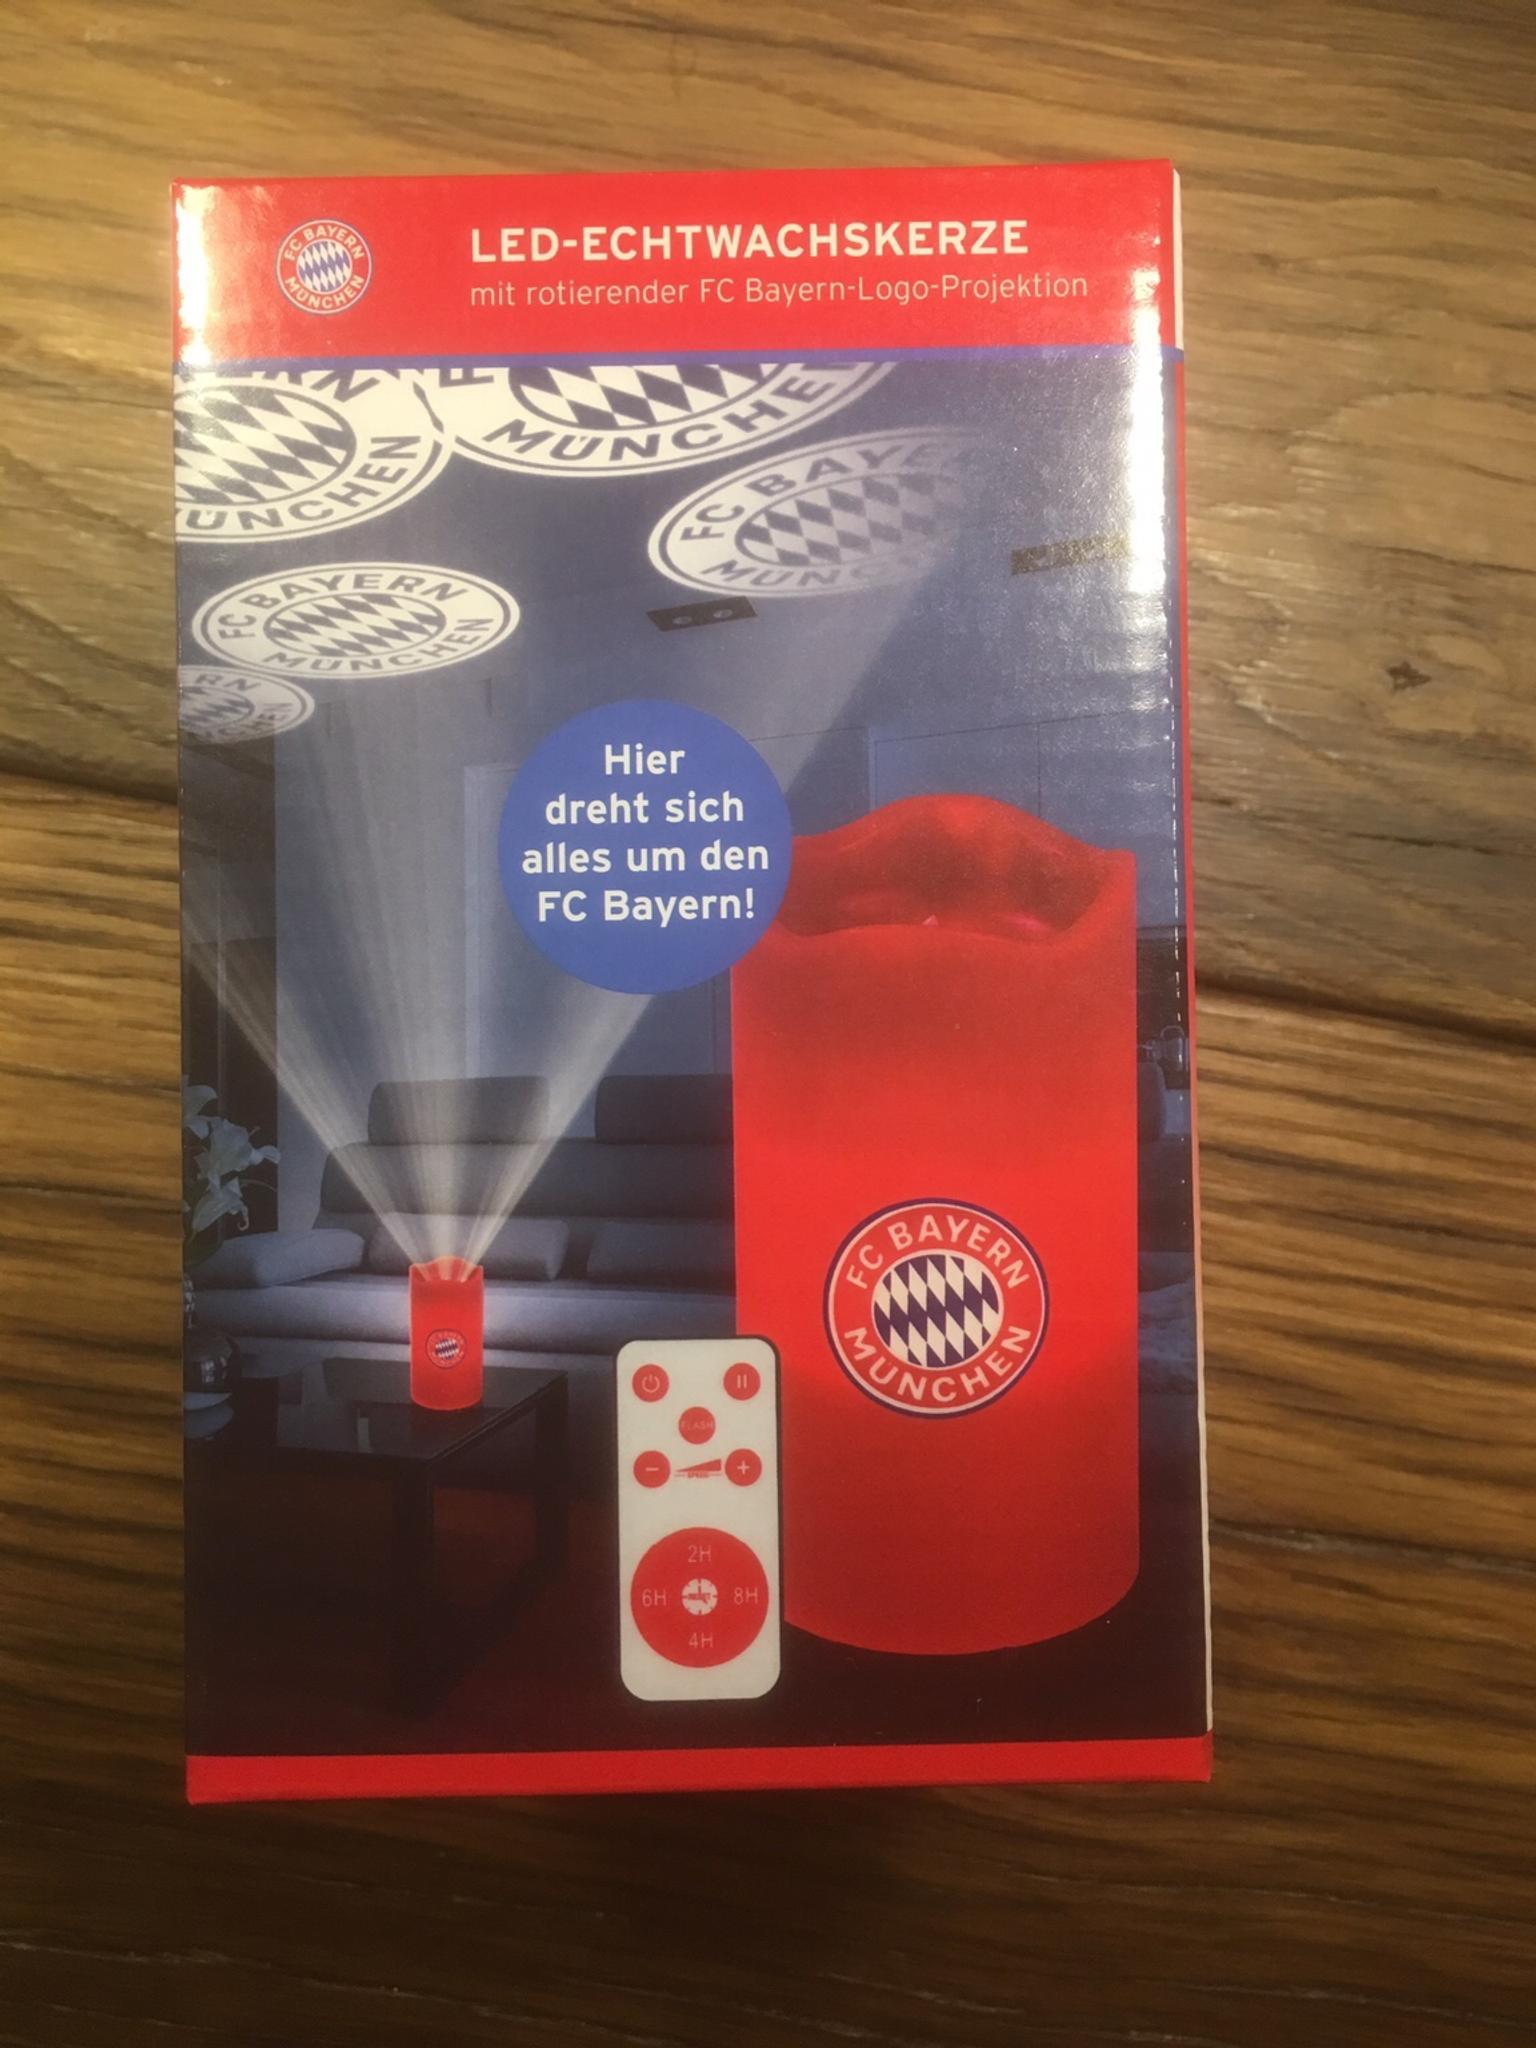 FC BAYERN MÜNCHEN LED-Echtwachskerze Mit rotierender FC Bayern-Logo-Projektion 